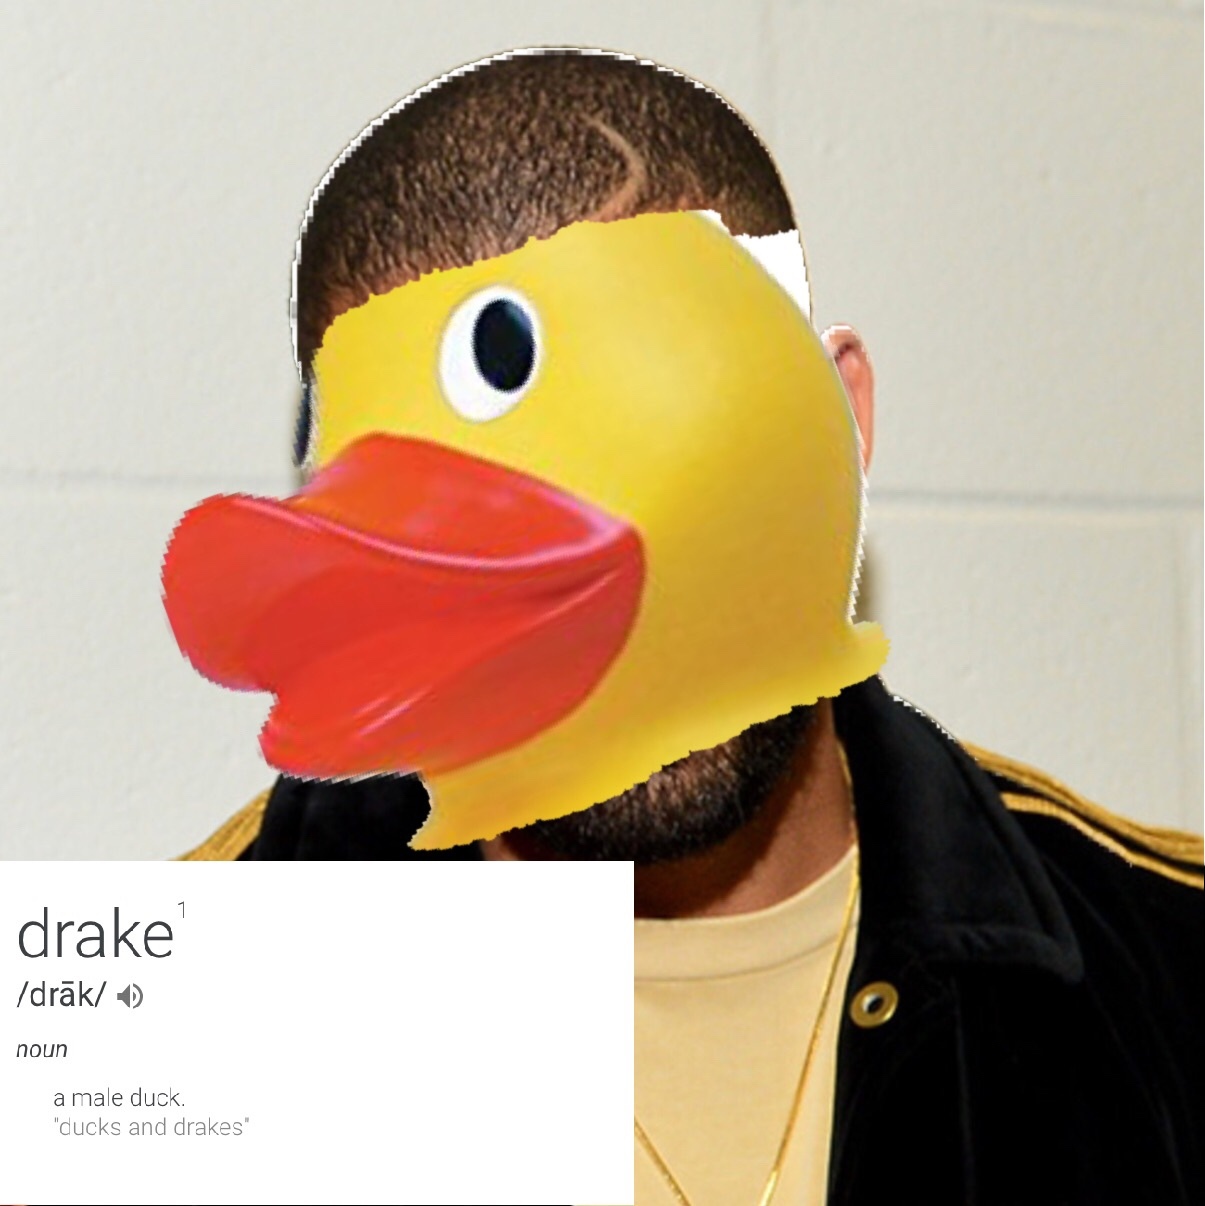 drake the duck - meme